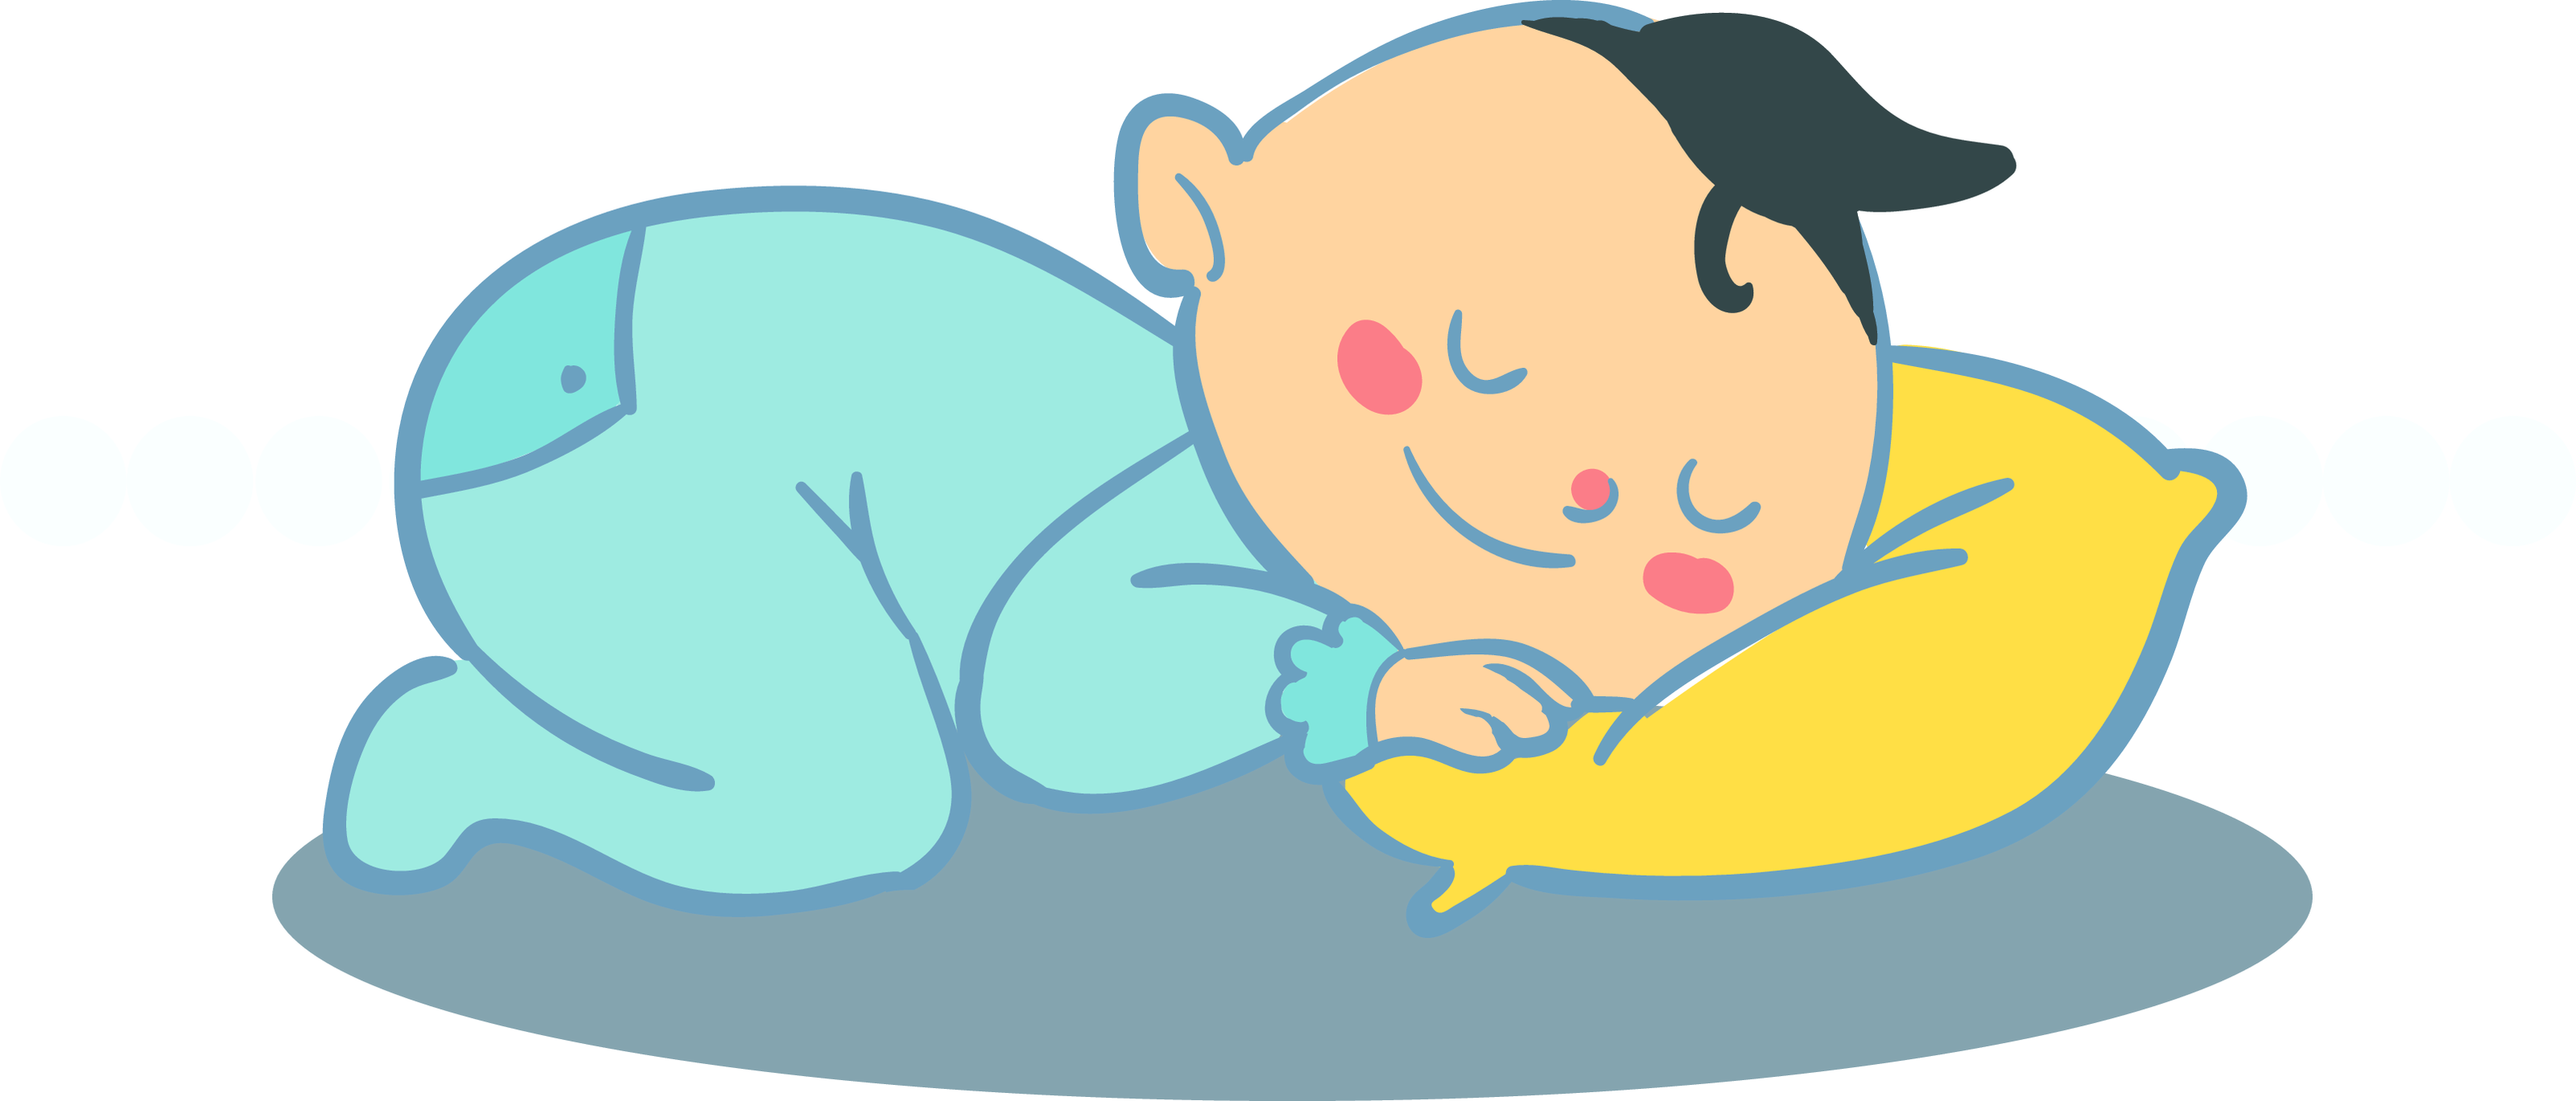 卡通可爱婴儿睡觉模板免费下载_eps格式_650像素_编号41027039-千图网